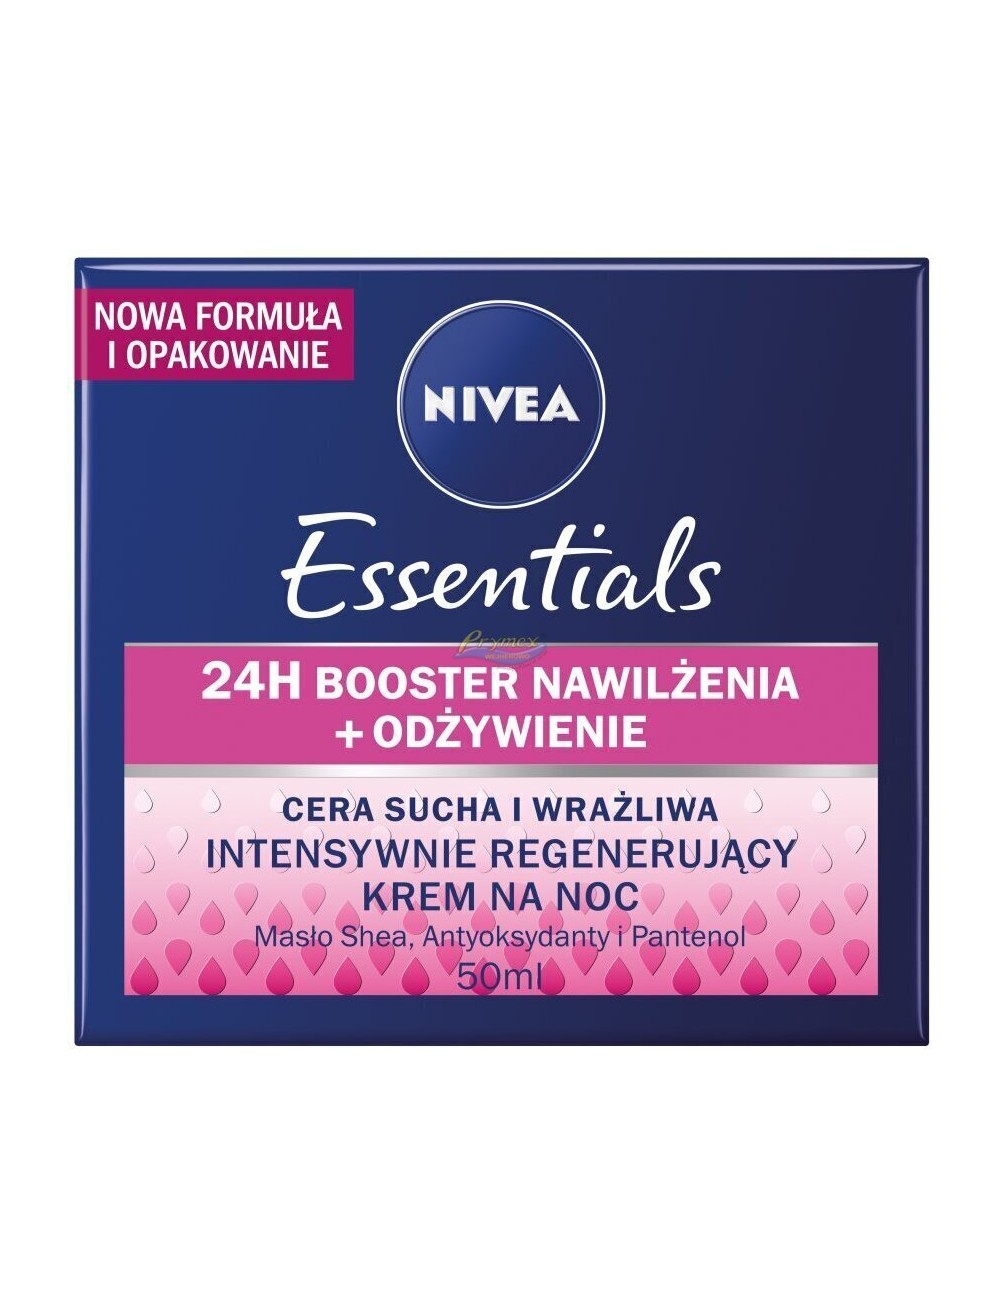 Nivea Essentials 24h Booster Nawilżenia Odżywienie Krem na Noc z Masłem Shea, Antyoksydantami i Pantenolem 50 ml 